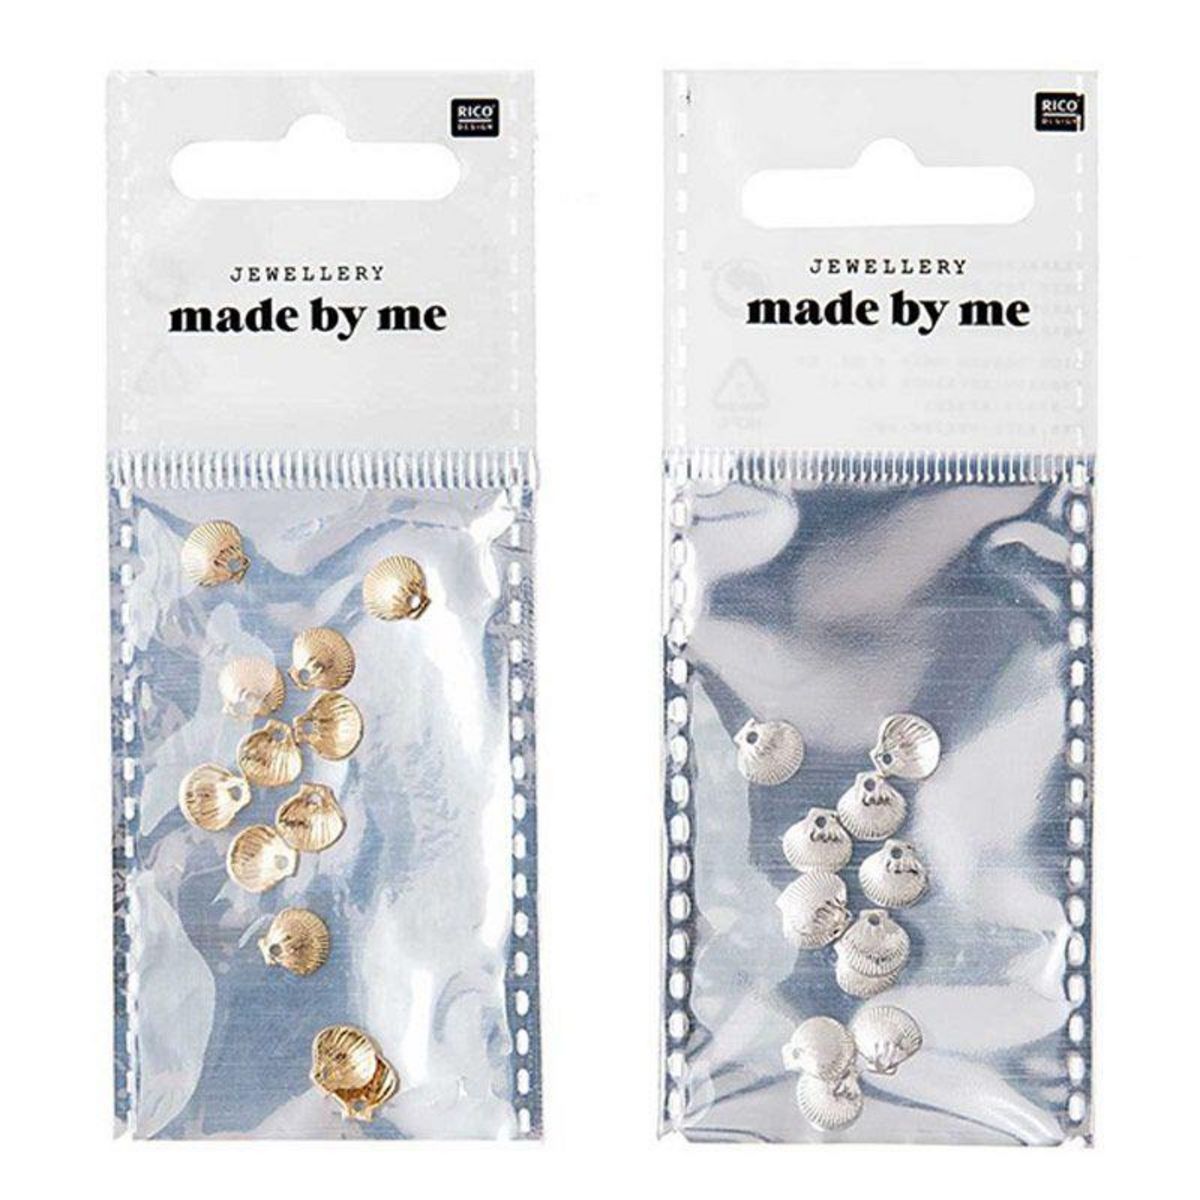 RICO DESIGN 24 perles mini coquillages pour bijoux - Doré & argenté